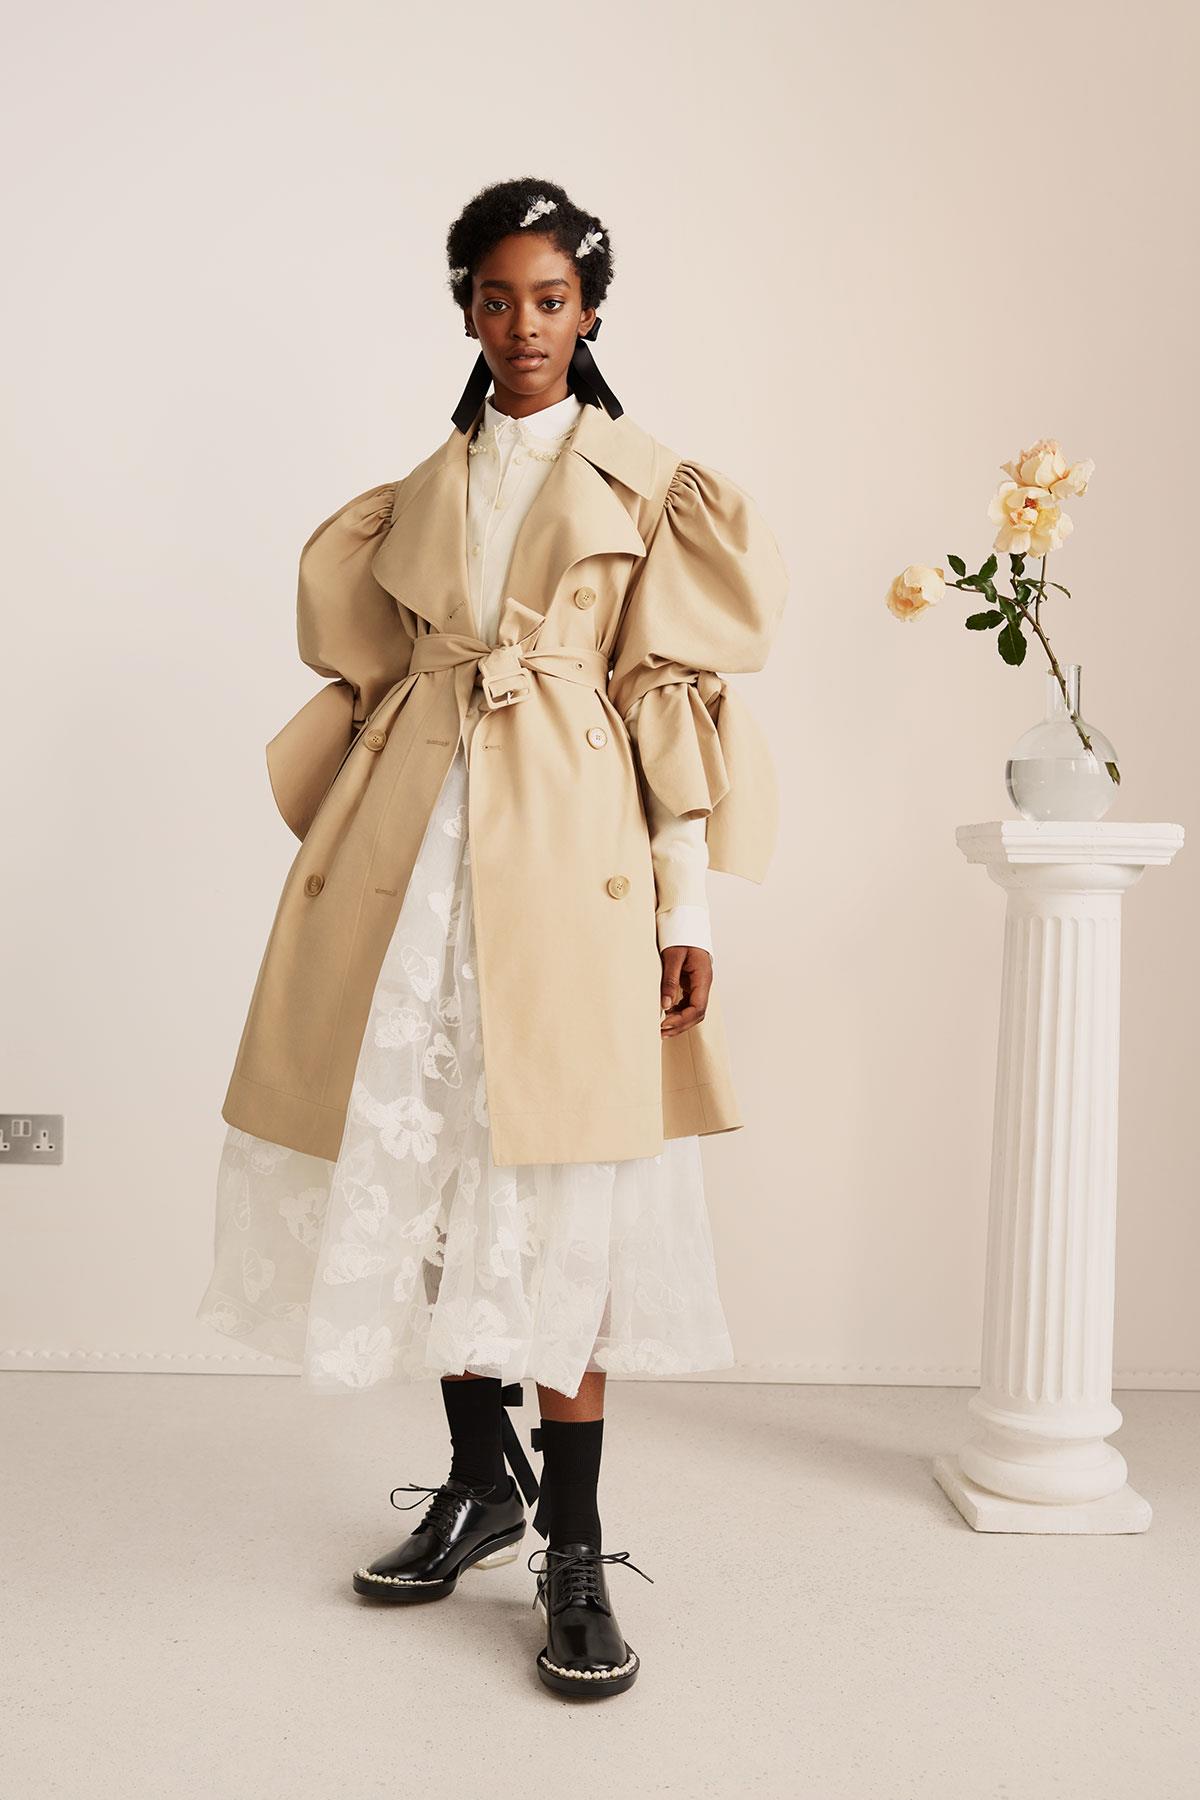 Simone Rocha para H&M, la colaboración de moda más esperada